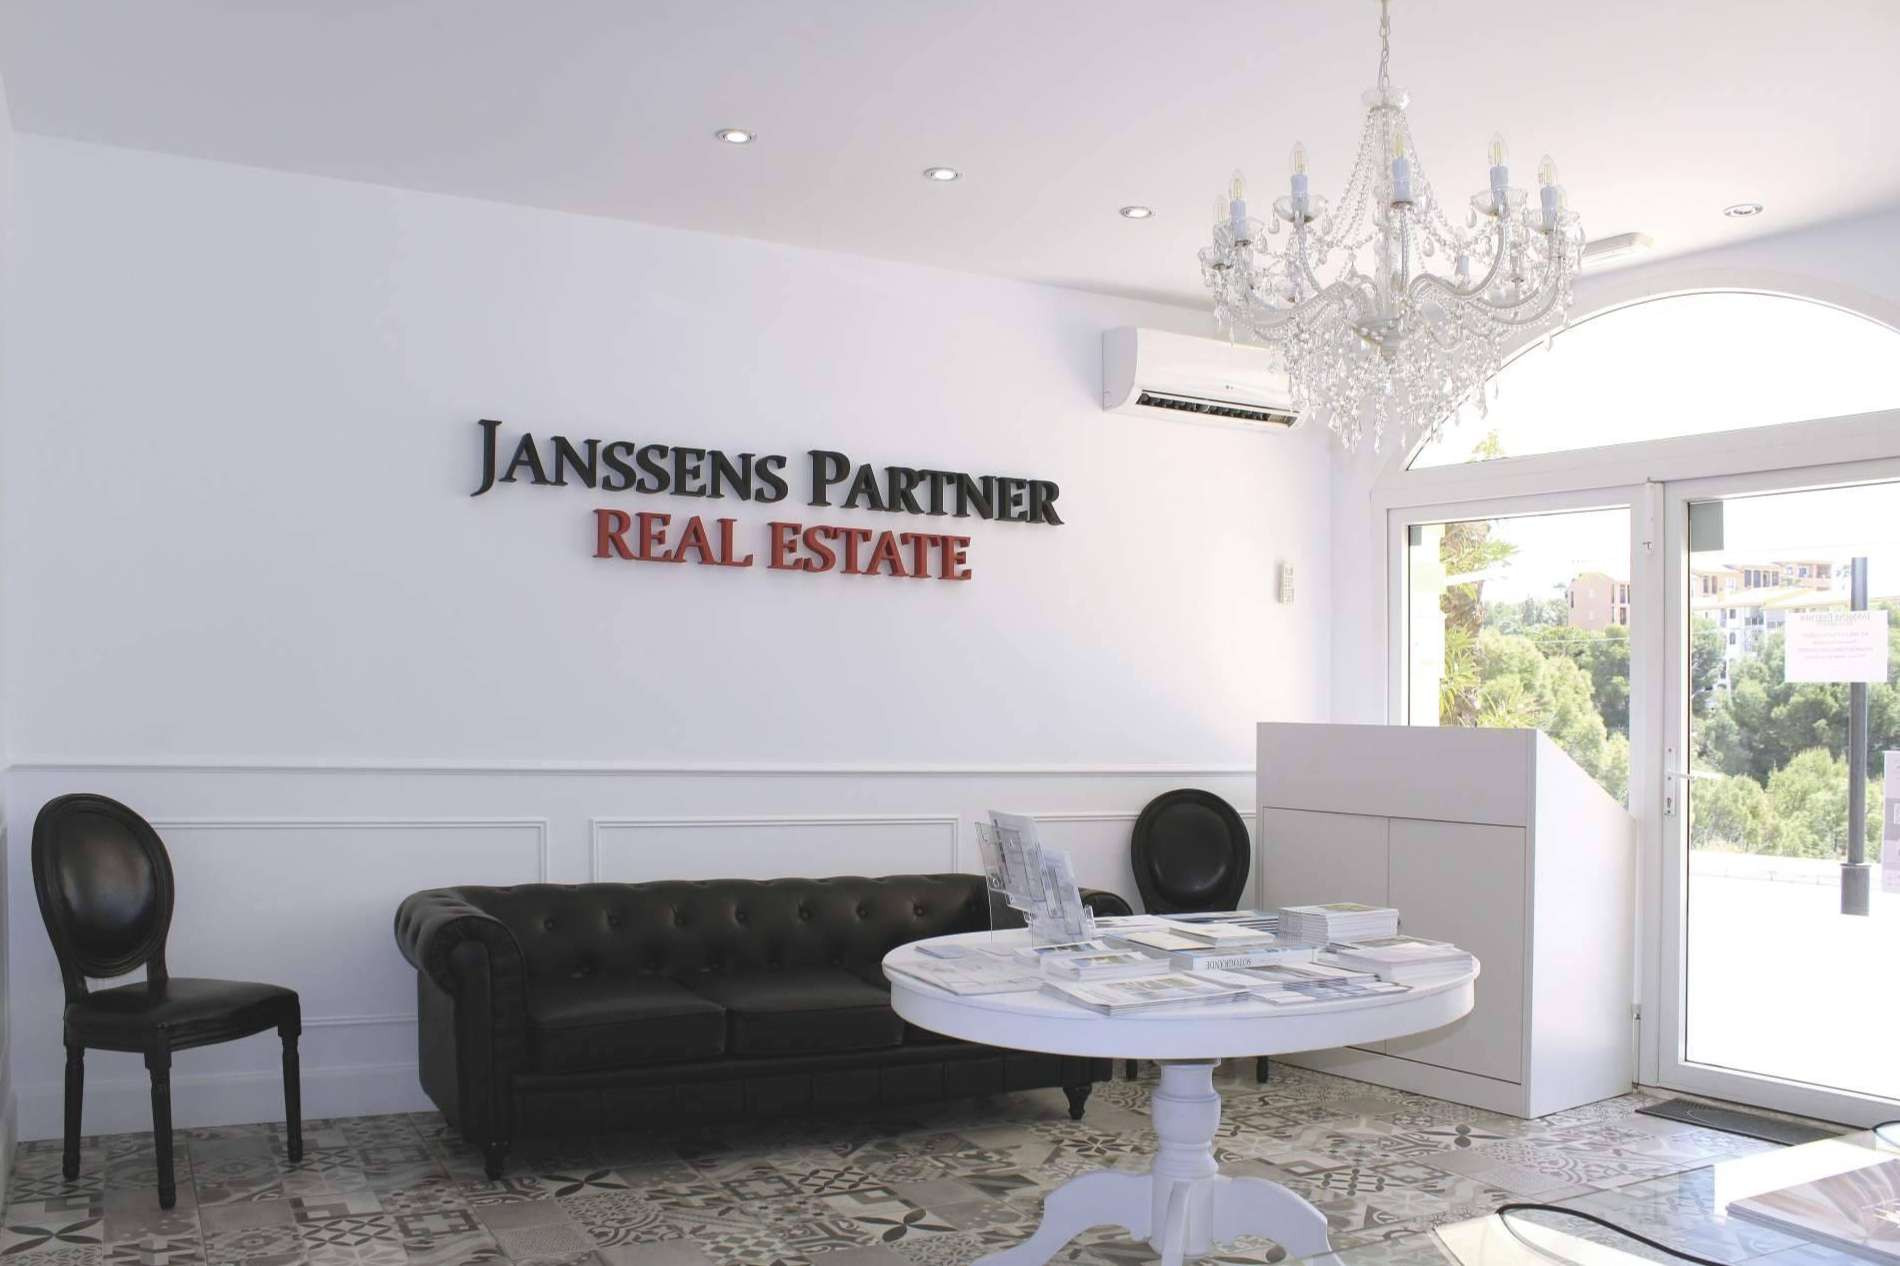  Janssens Partner Real Estate cuenta con casi 30 años de trayectoria operando con propiedades en la Costa Blanca 